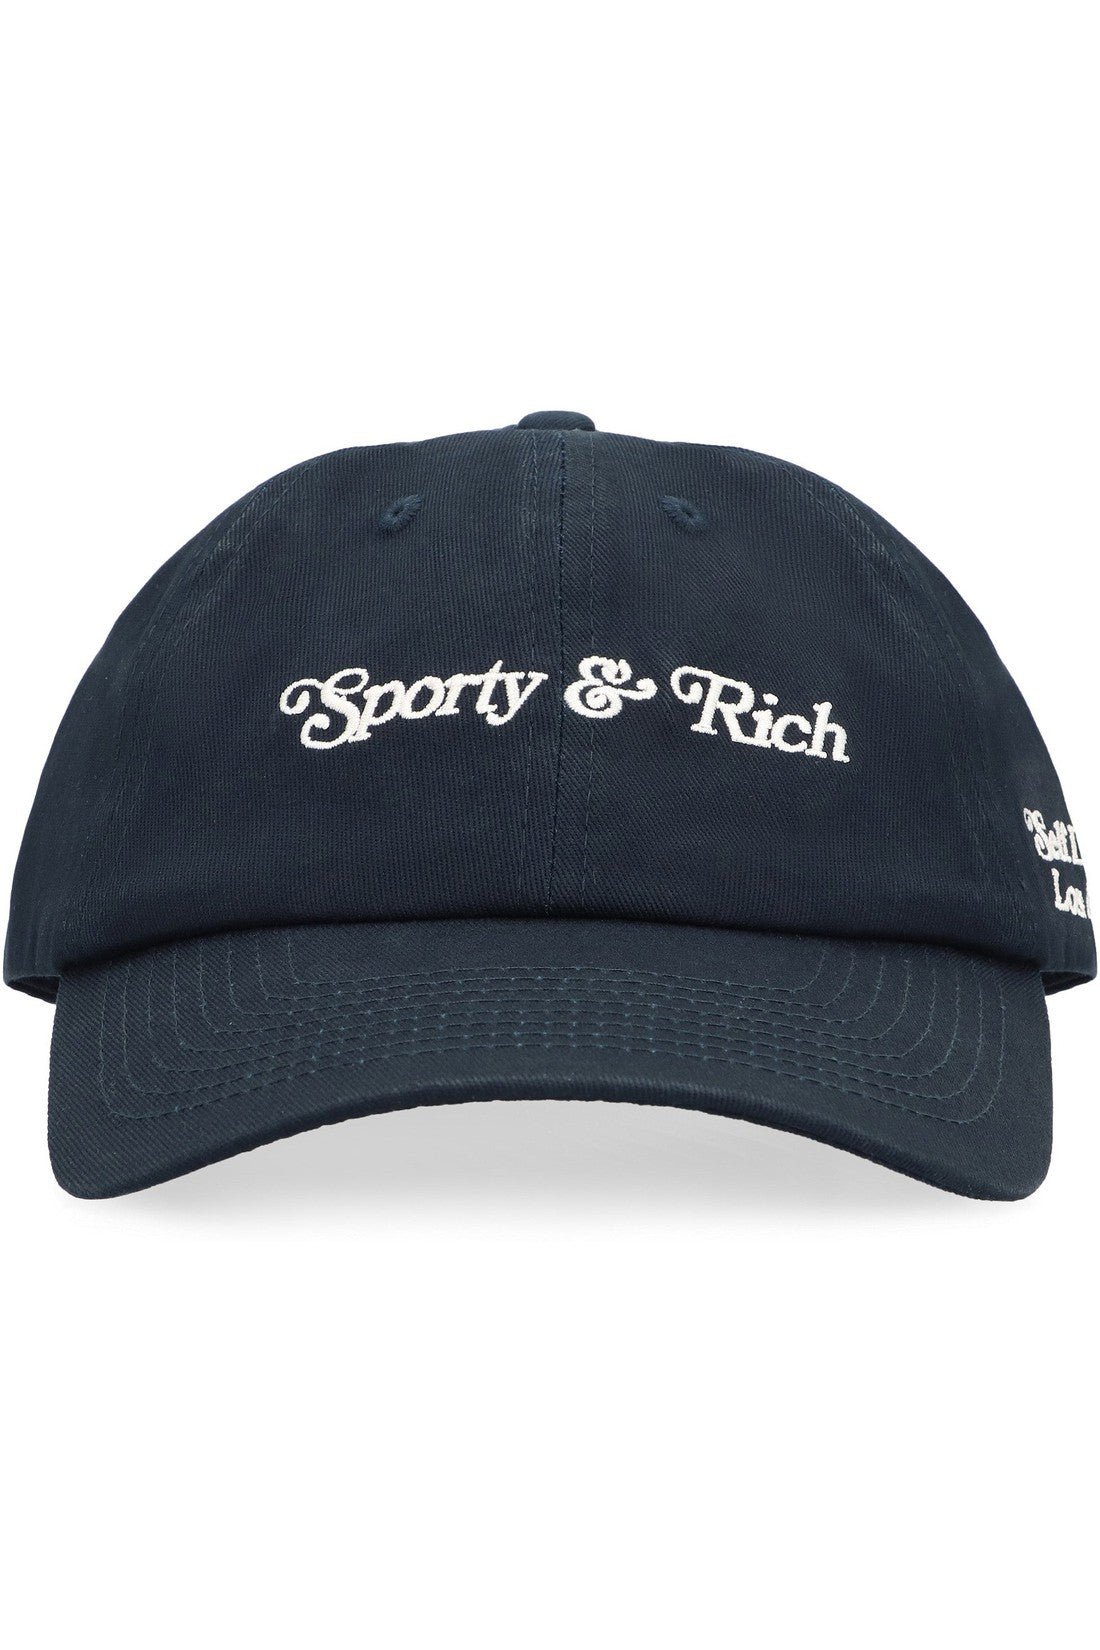 Sporty & Rich-OUTLET-SALE-Baseball cap-ARCHIVIST